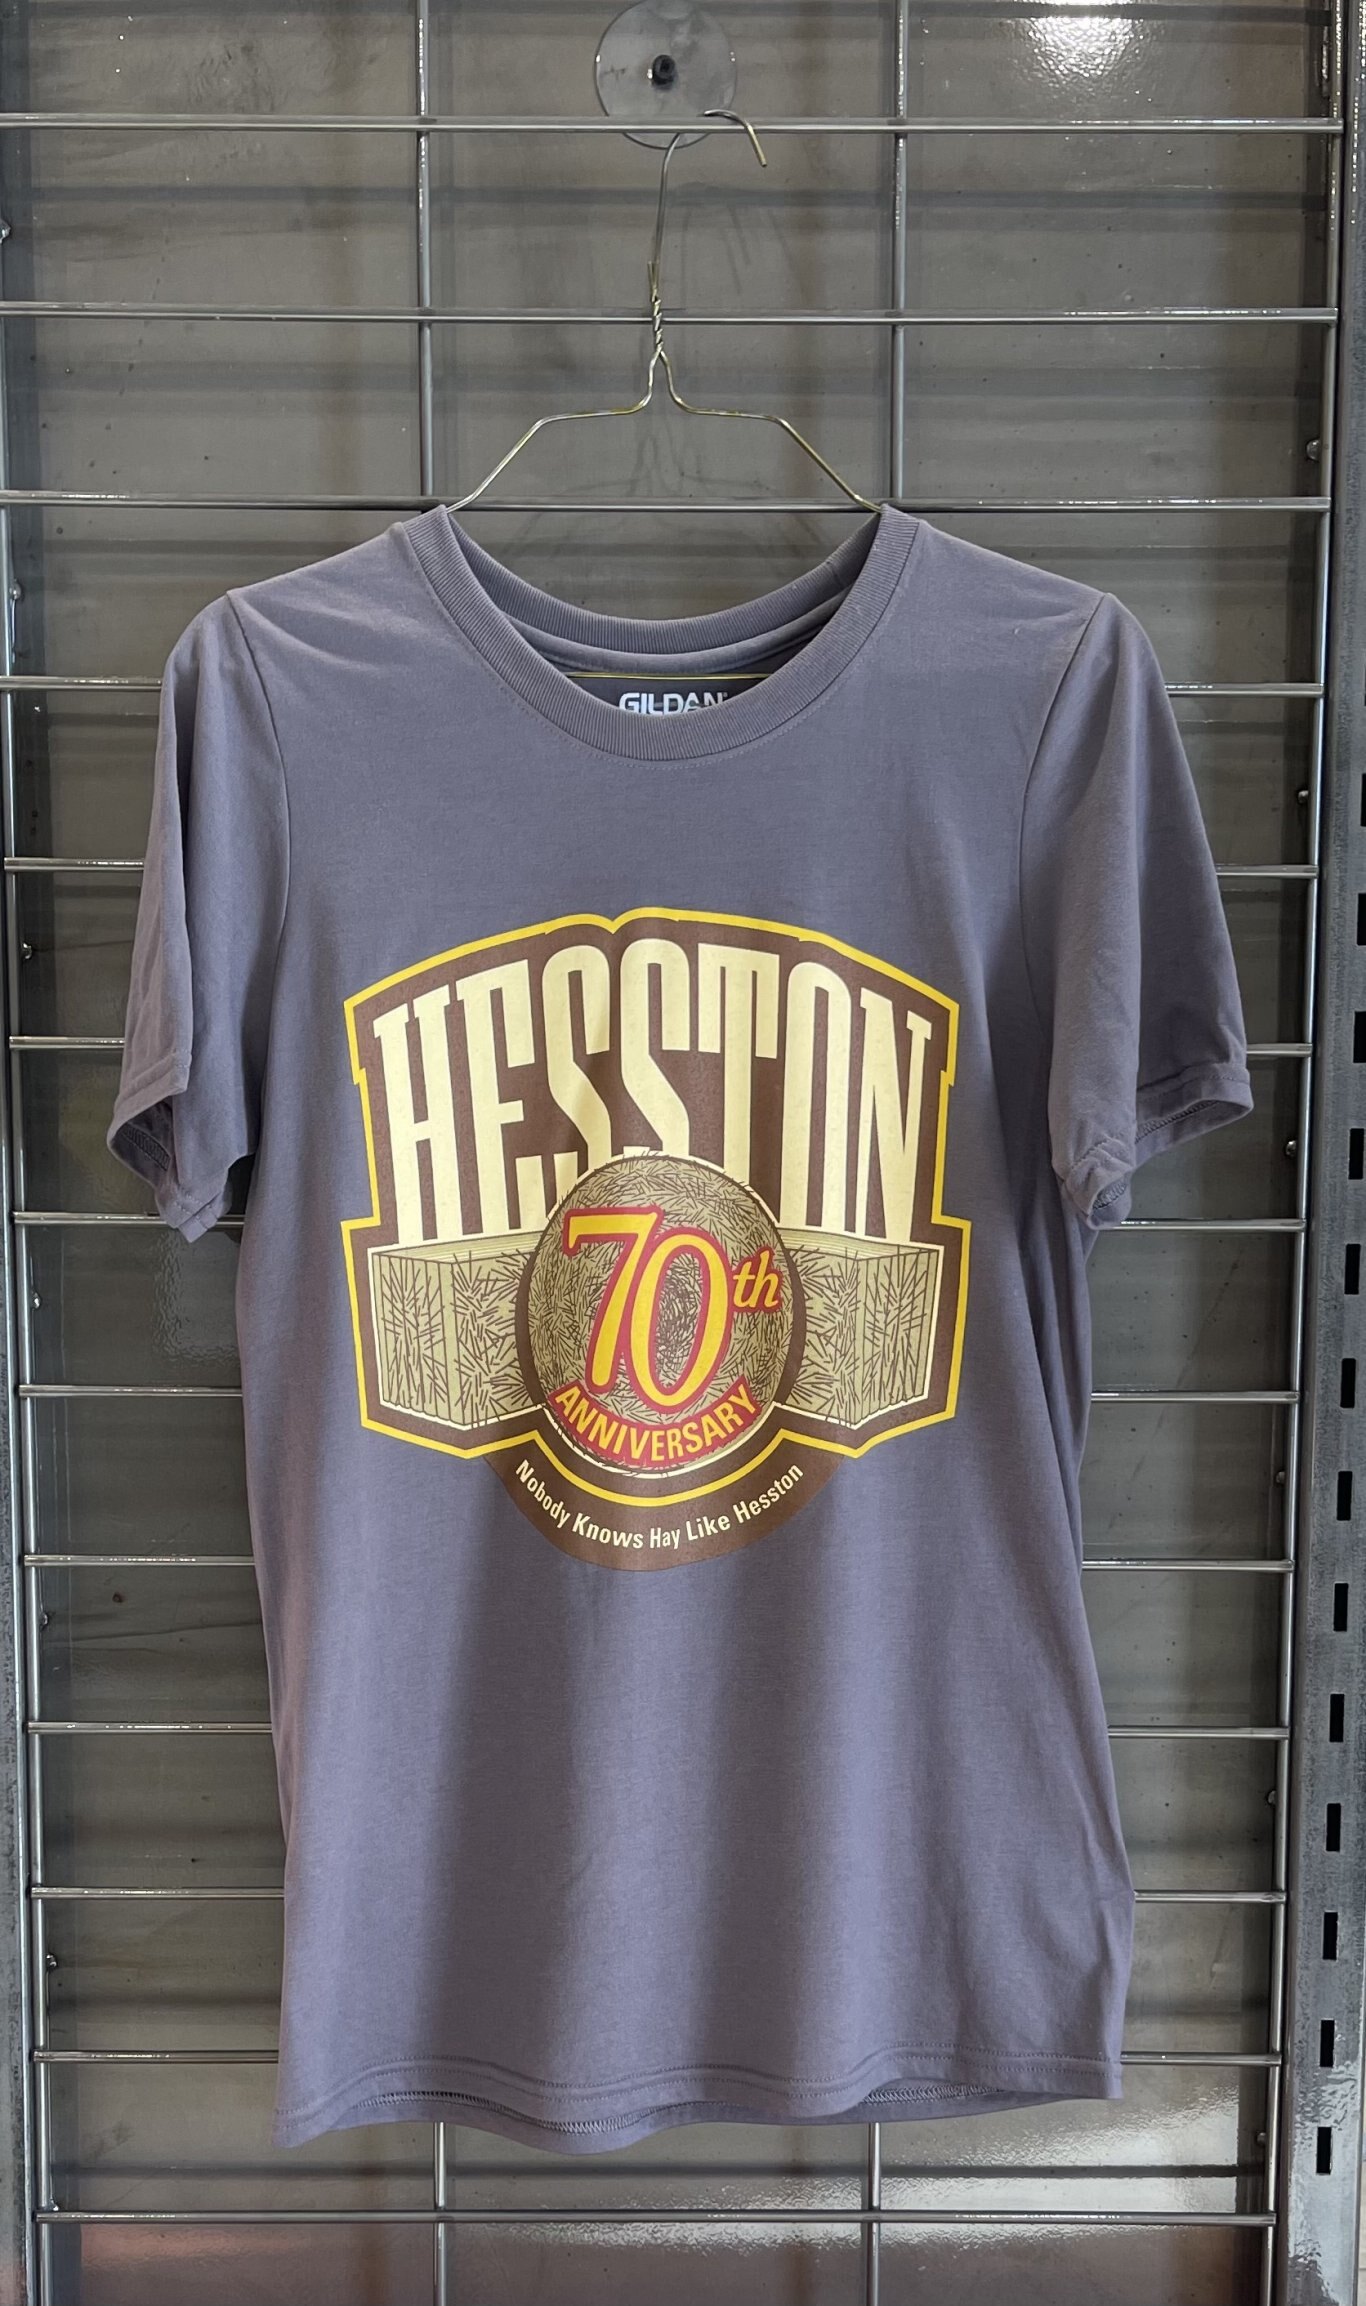 Hesston 70th Anniversary T-Shirt